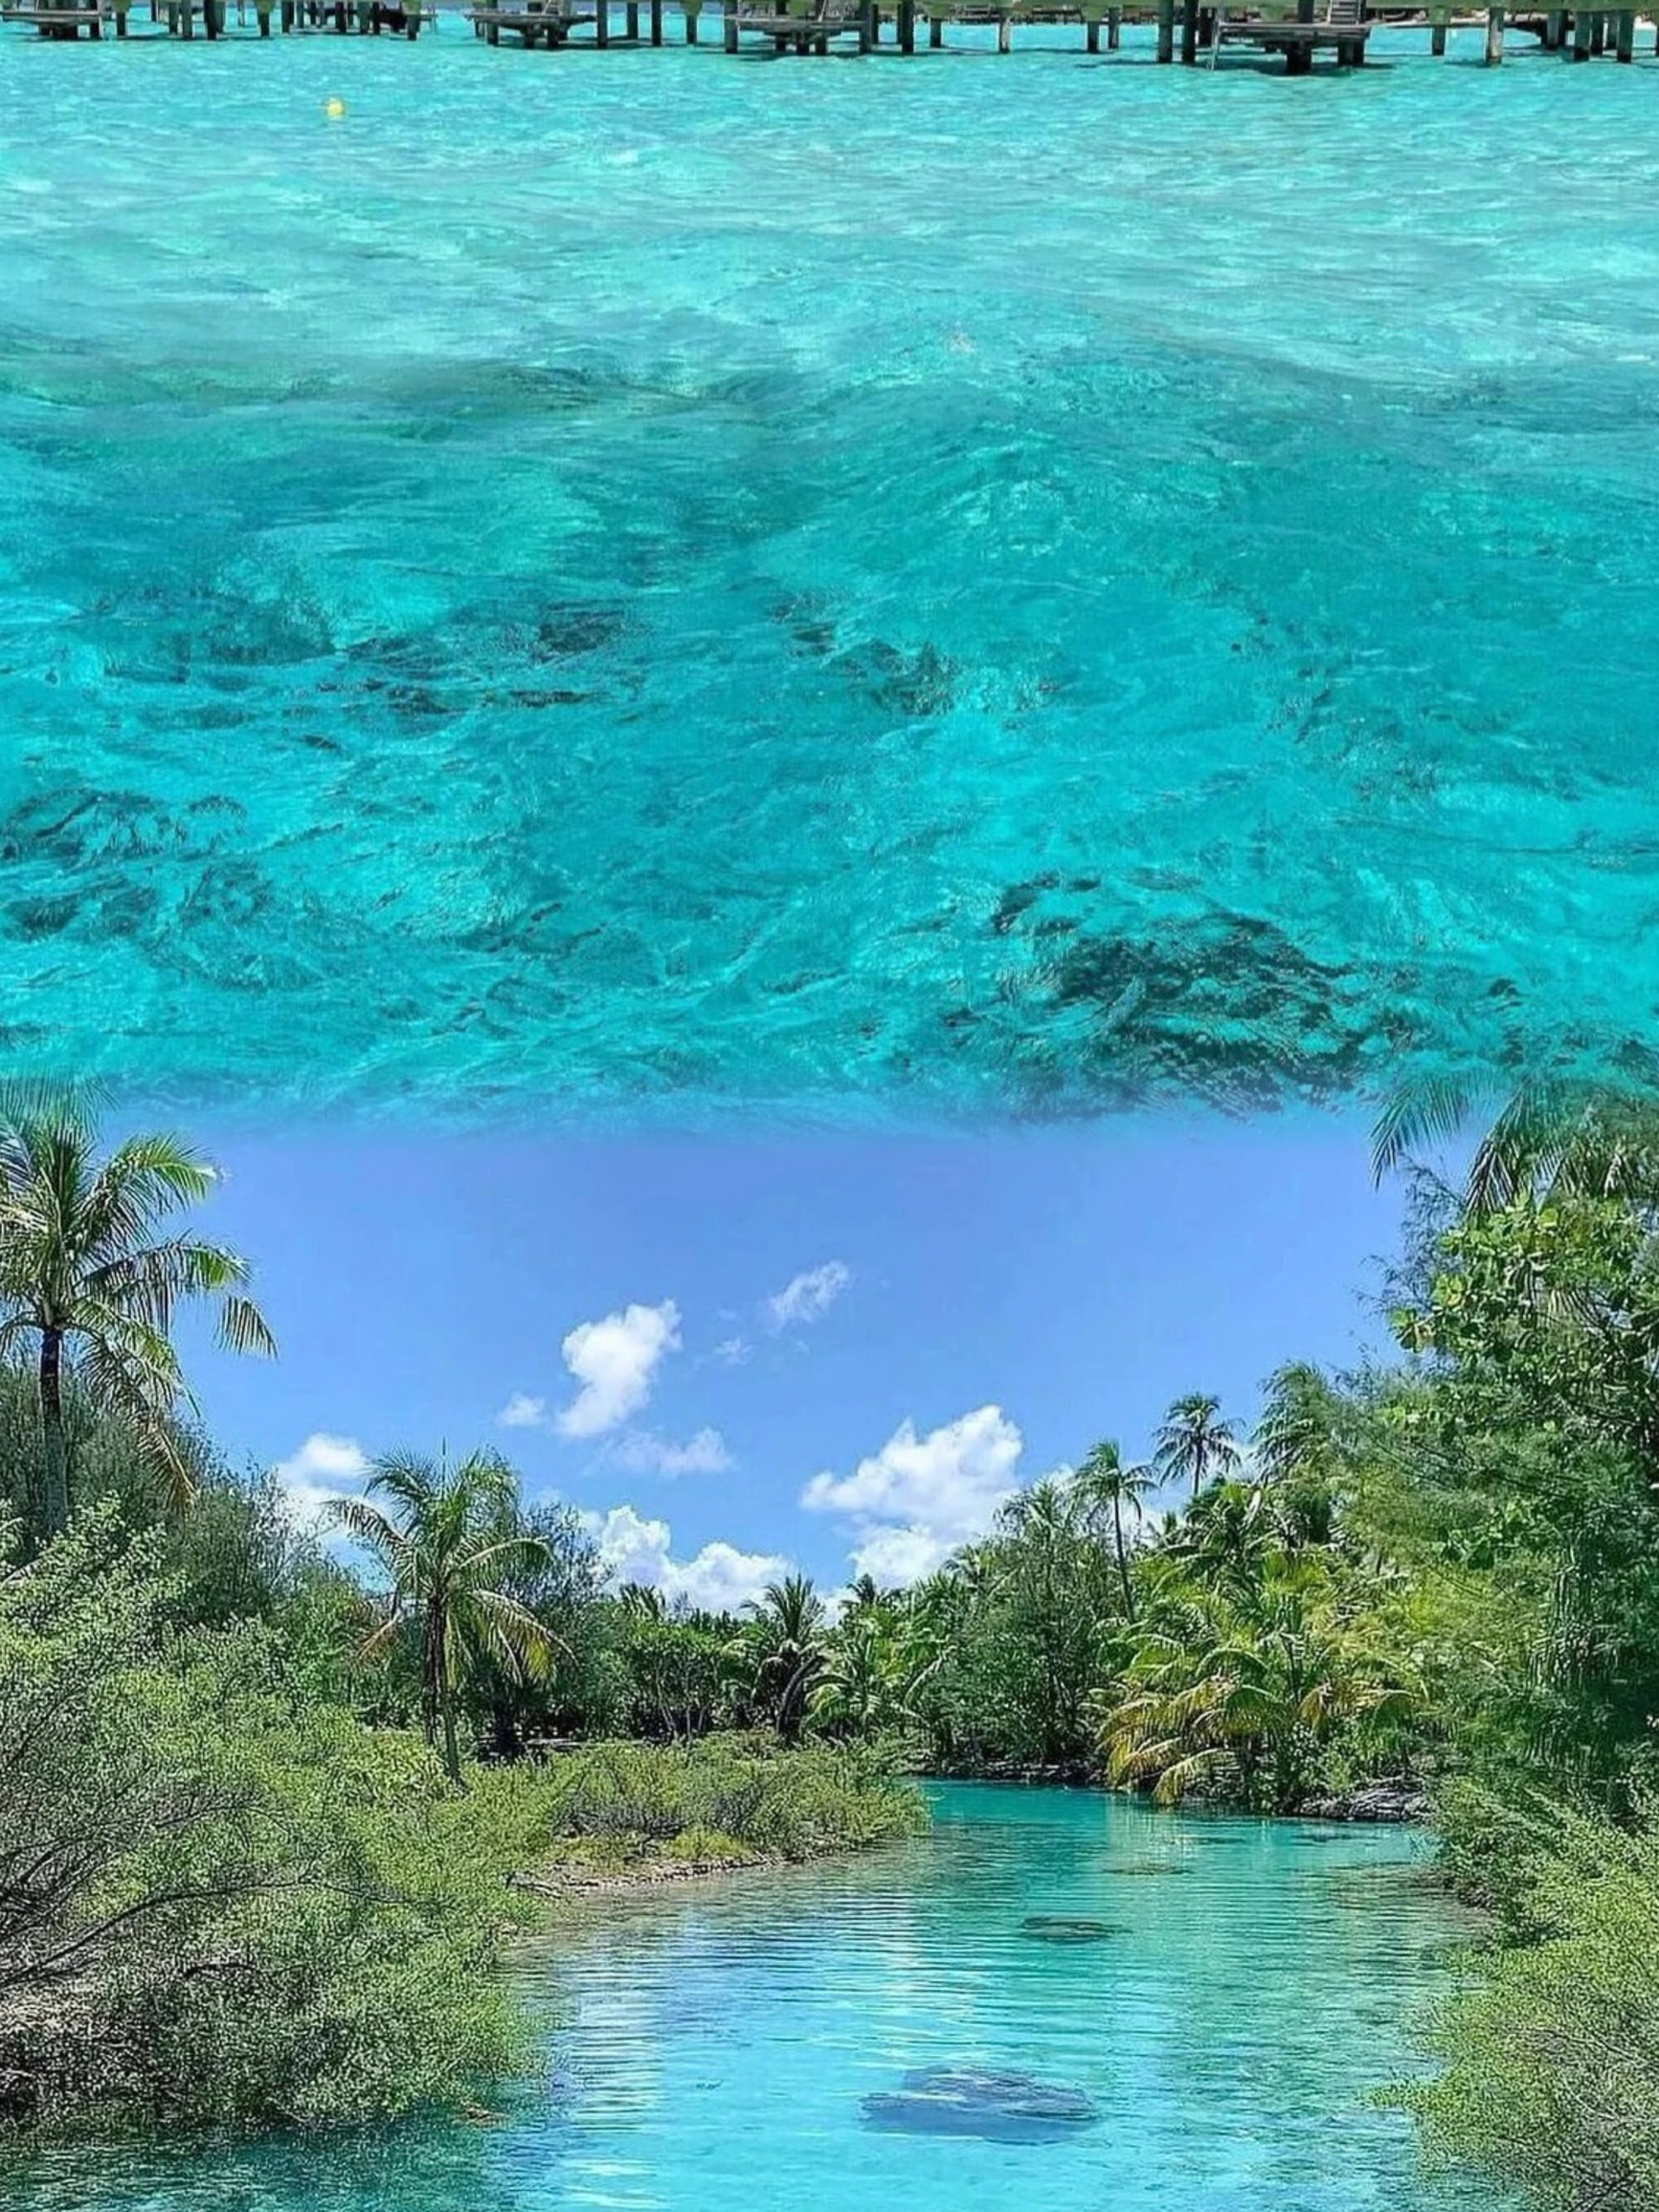 海岛界爱马仕 | 世界上最性感的岛屿之一波拉岛。